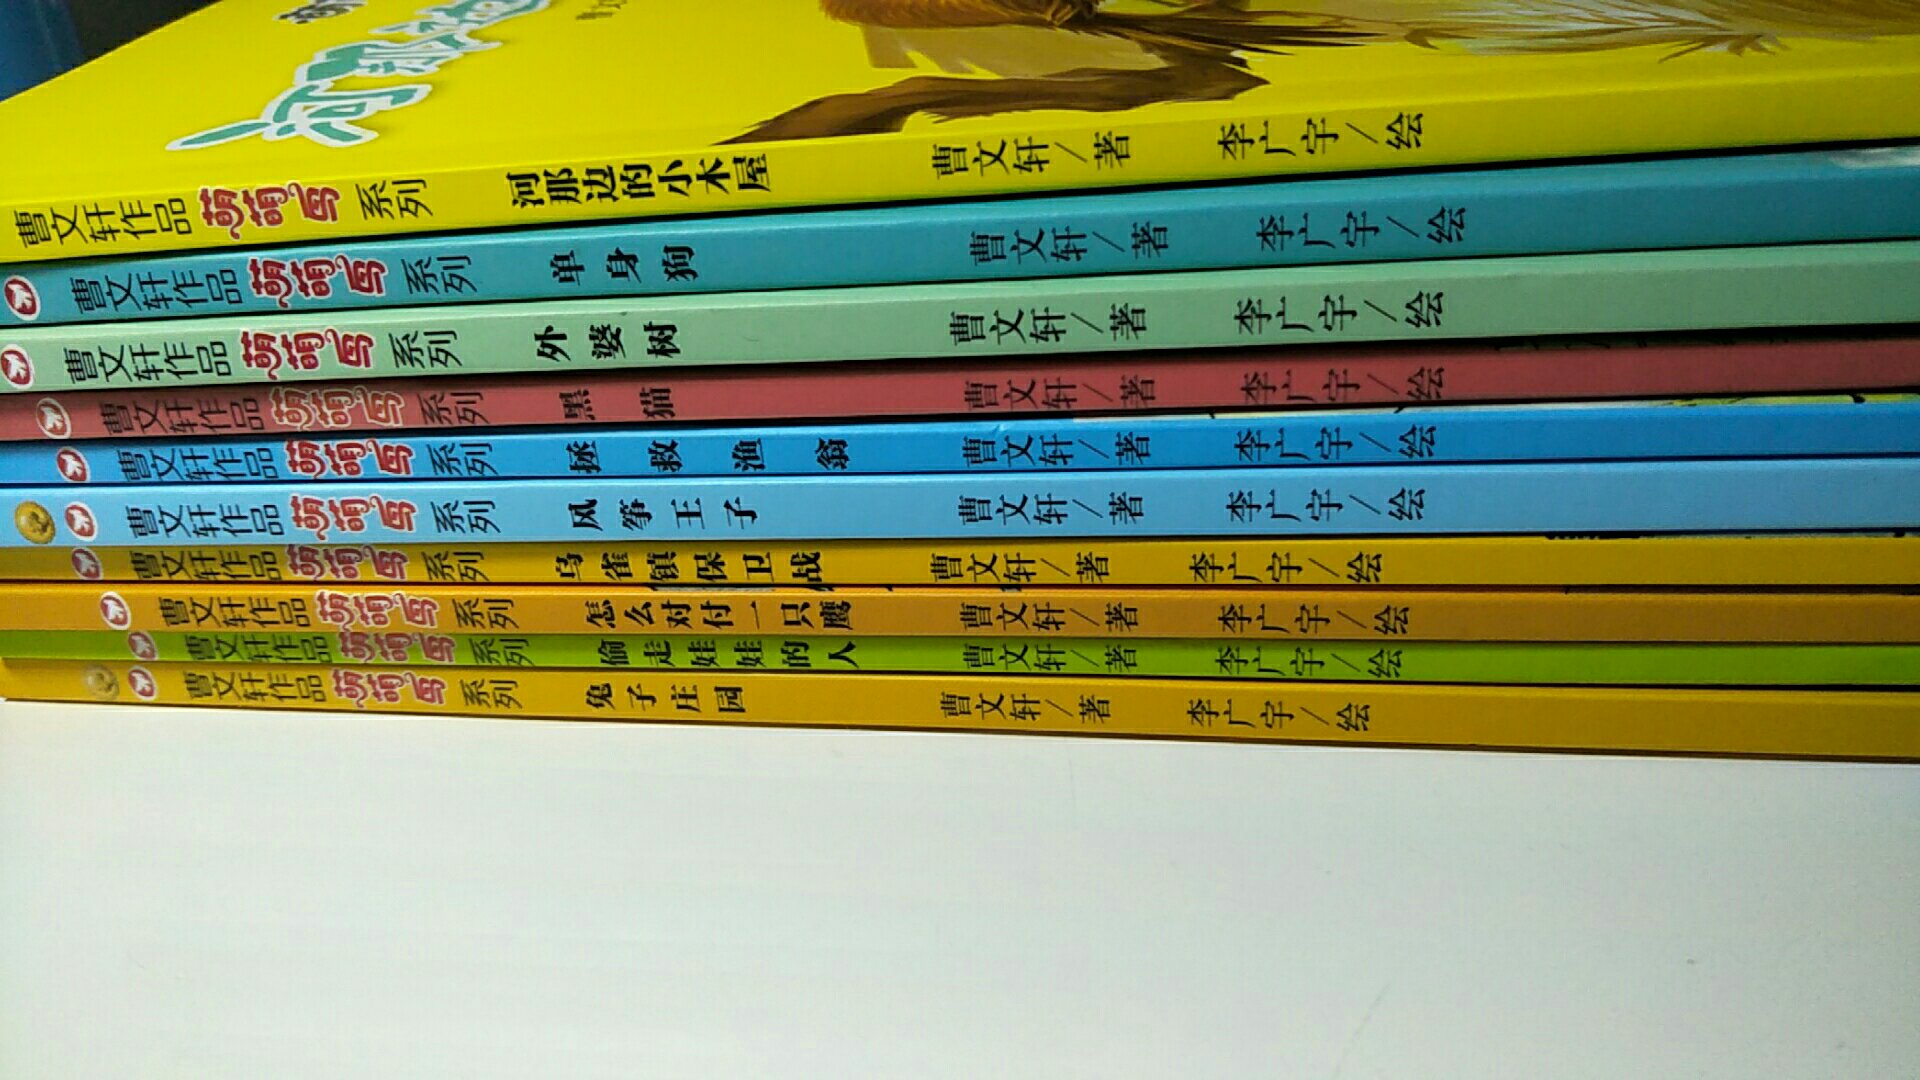 特别好，孩子特别喜欢，曹文轩这种大作家的书就是不一样！推荐大家都买，真的对孩子成长帮助很大！